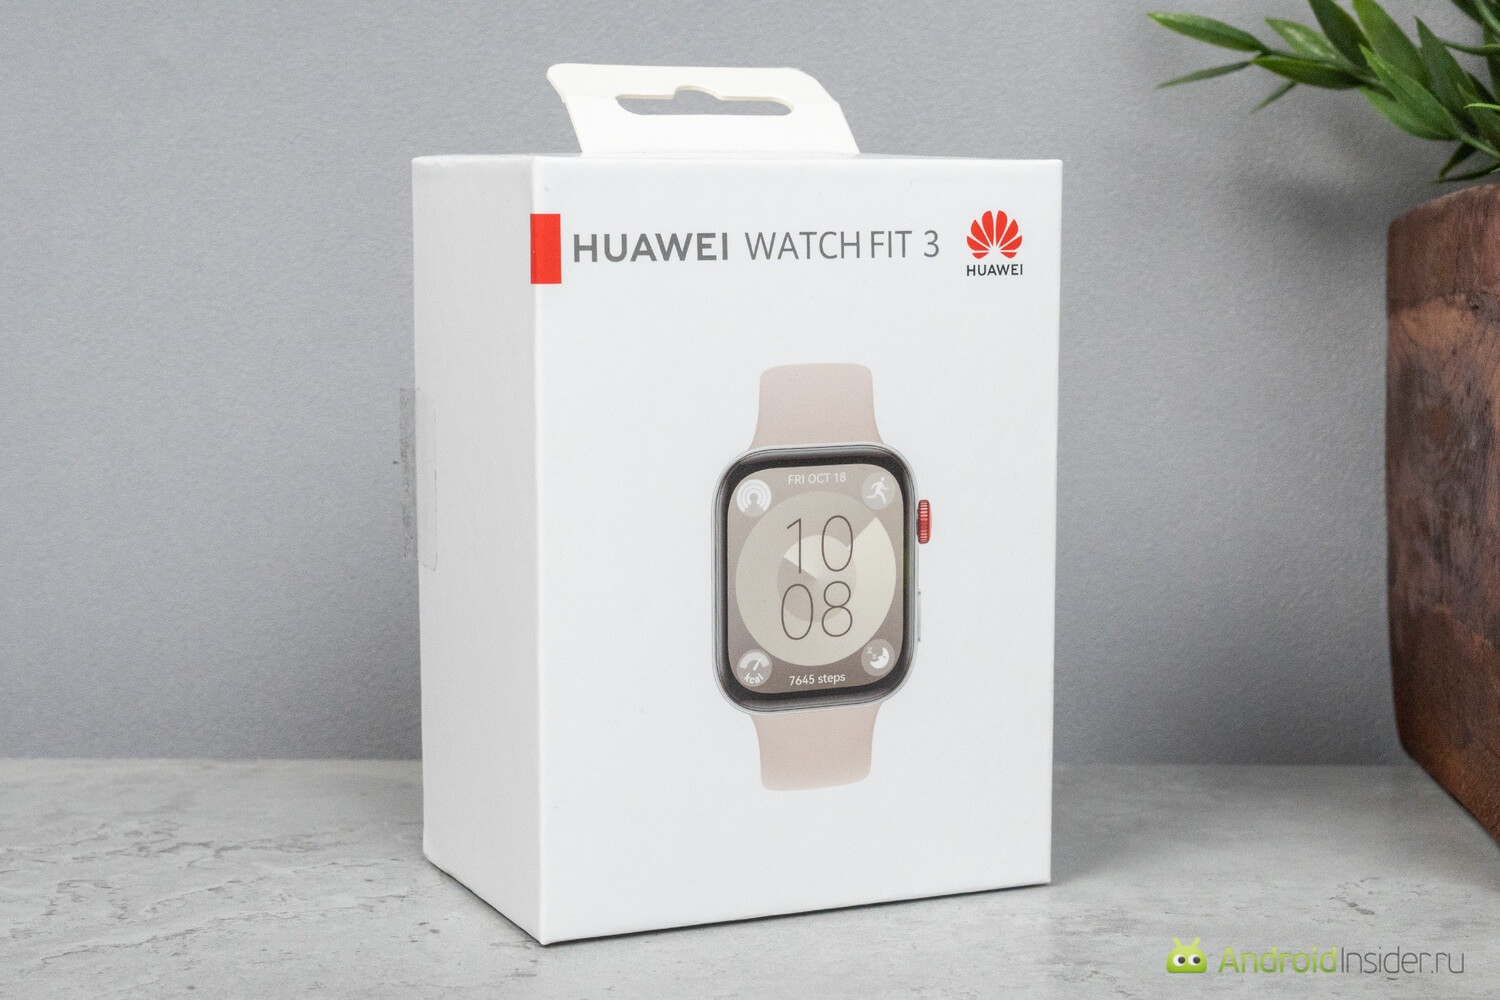 Обзор умных часов HUAWEI Watch Fit 3. Коробка простая и минималистичная, как обычно и бывает у HUAWEI. Фото.